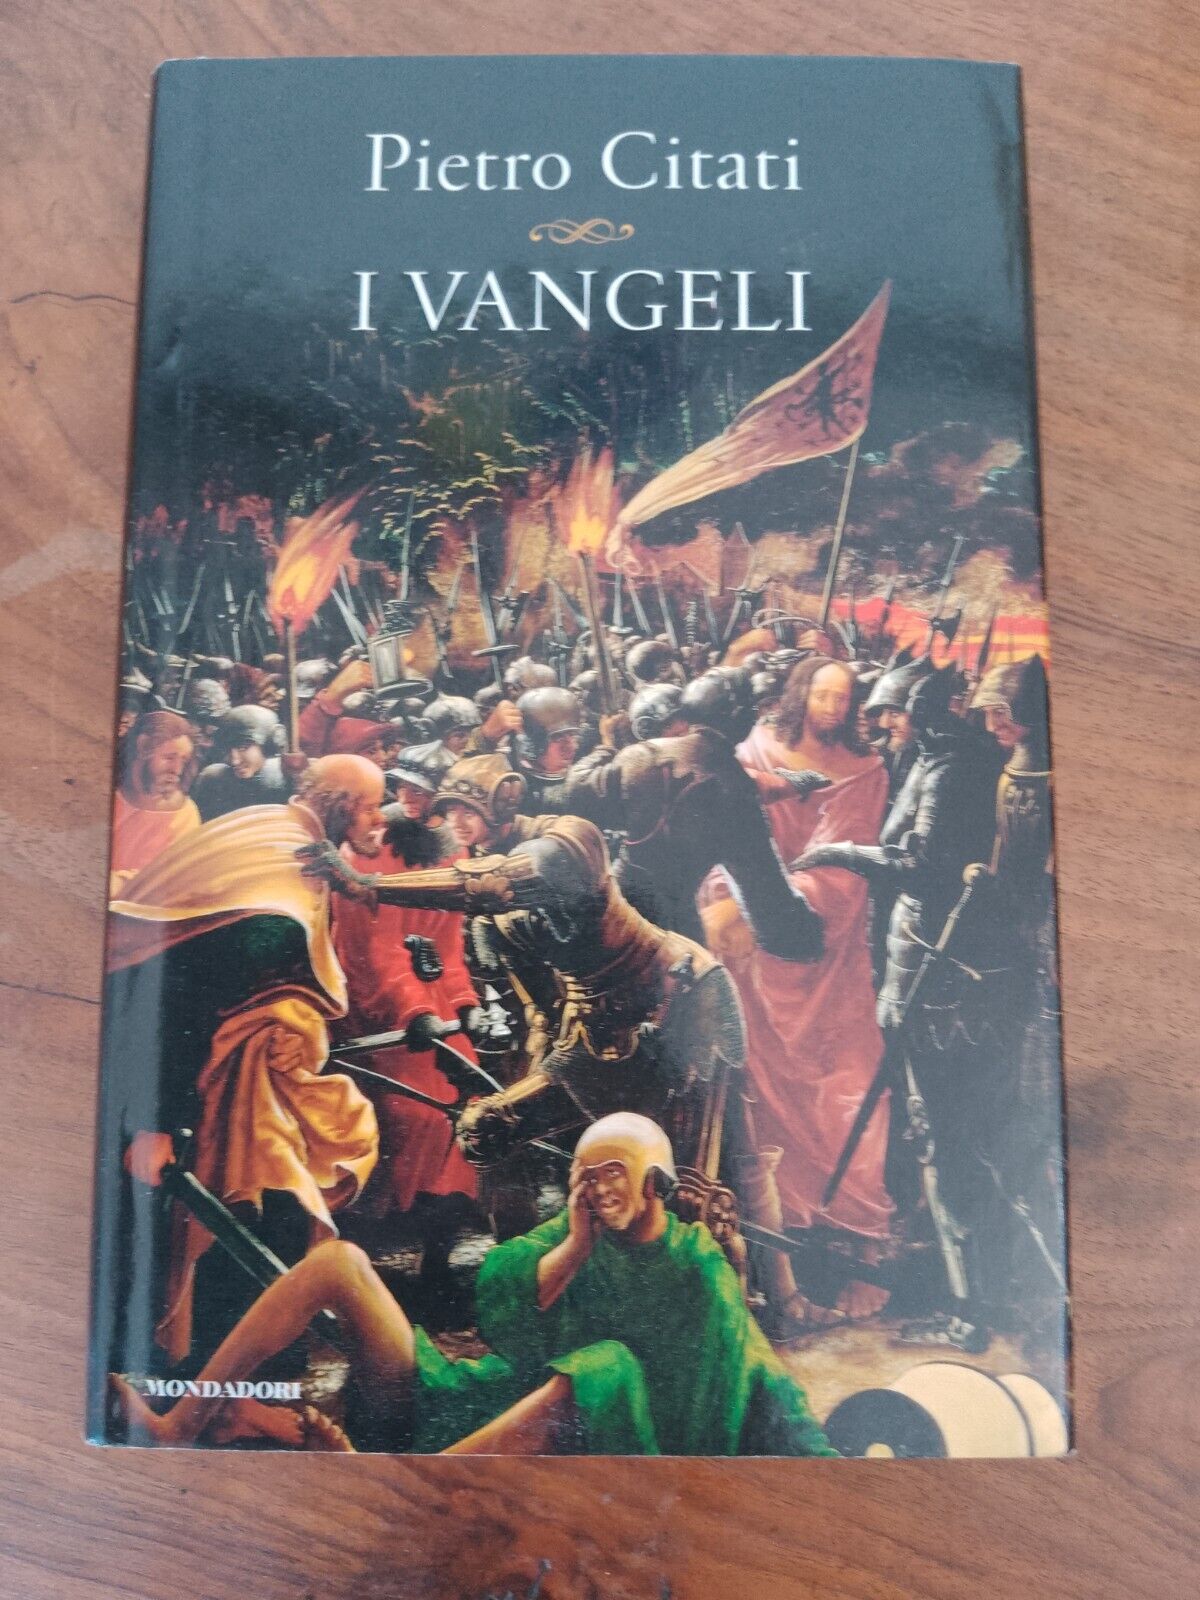 I Vangeli, Pietro Citati, Mondadori, 2014